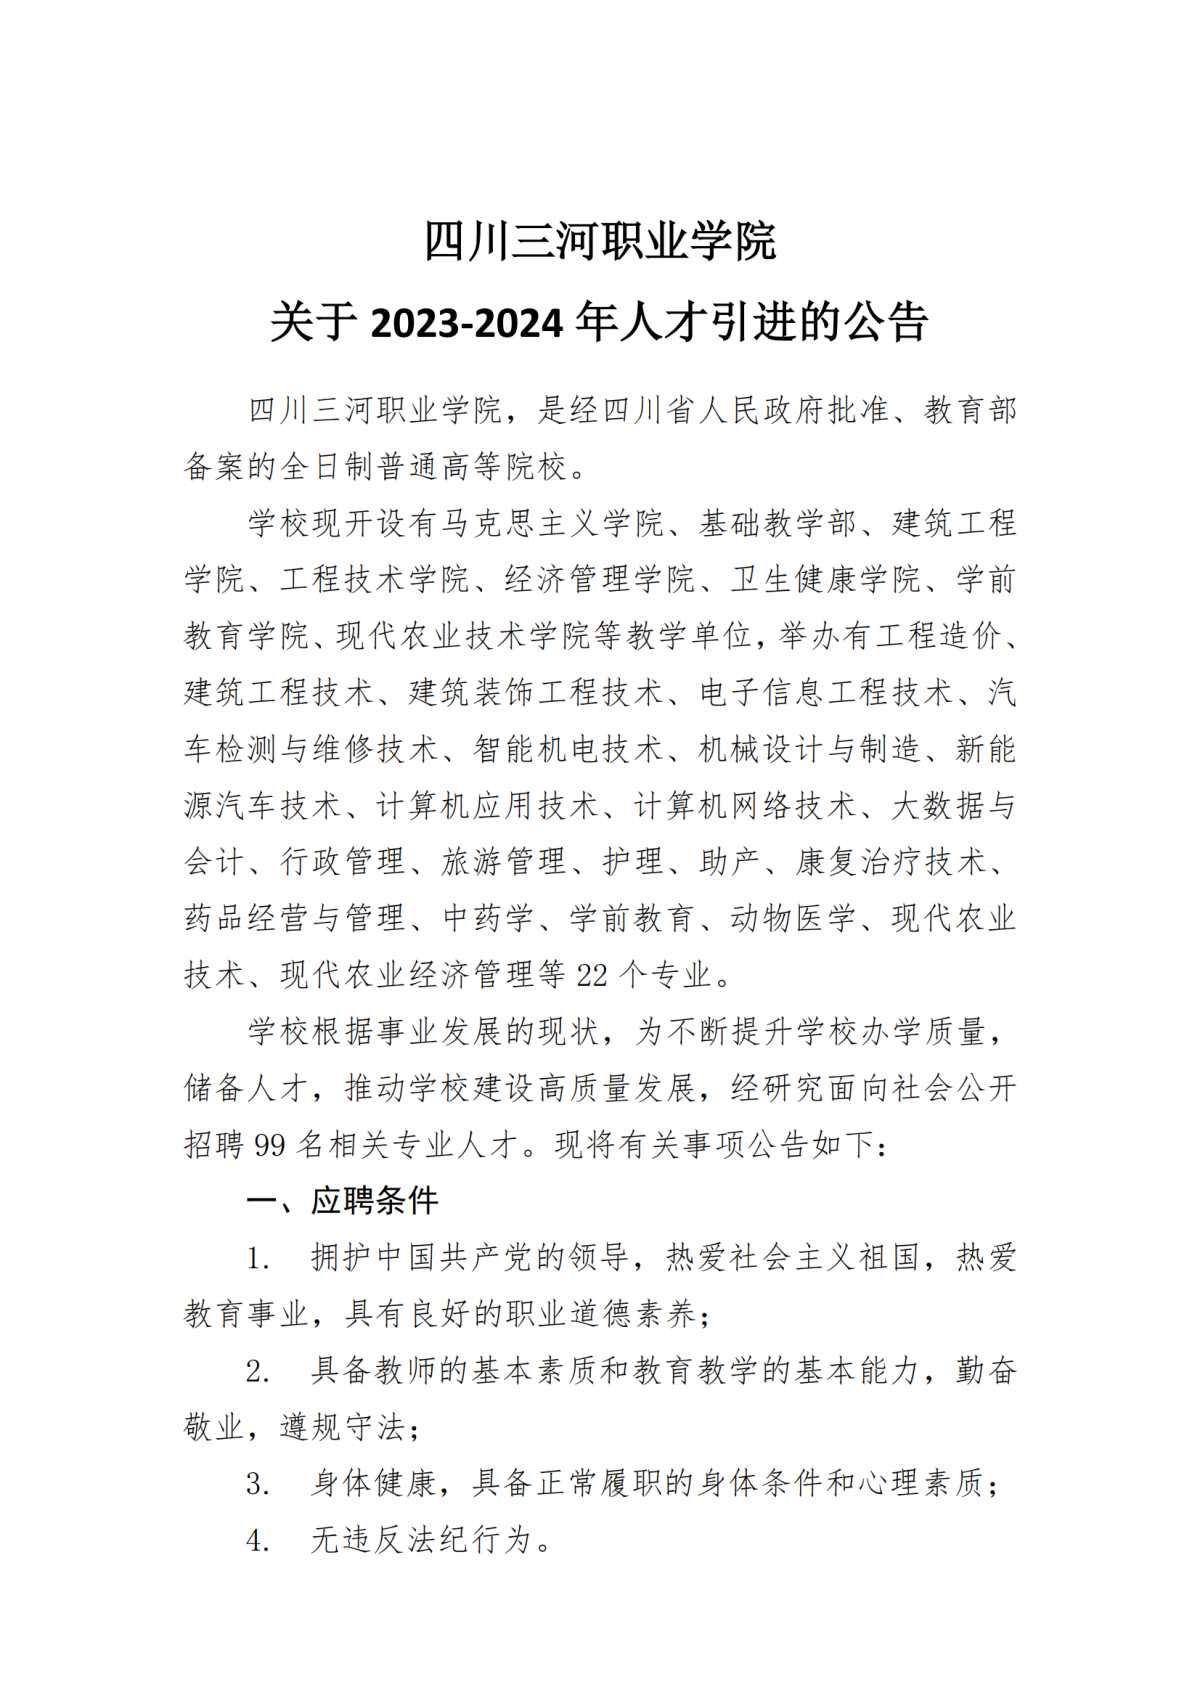 四川三河职业学院关于人才引进的公告2023